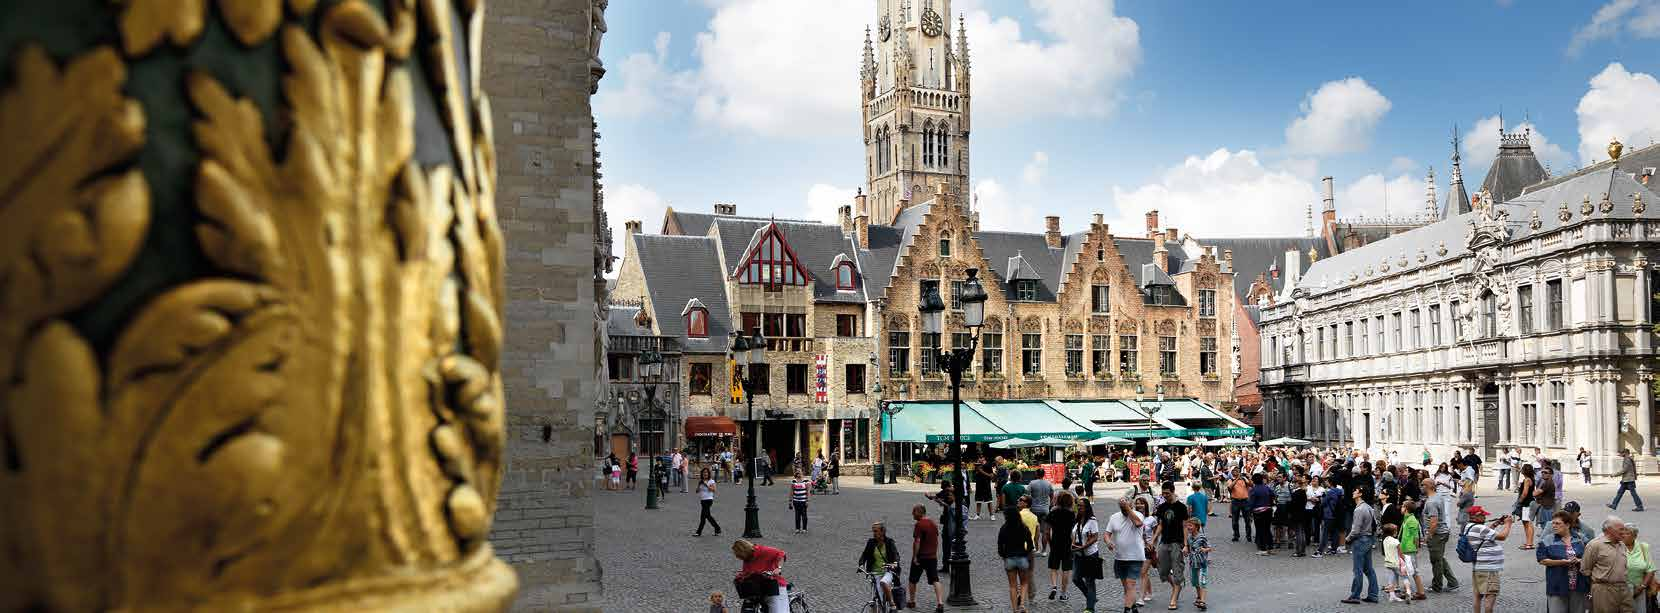 Westflandern & Brügge West Flanders & Bruges Wer das Leben in Ruhe genießen will, sollte nach Westflandern fahren. Diese ländliche Region mit ihren gemütlichen Dörfern lädt ein zum Radeln und Wandern.